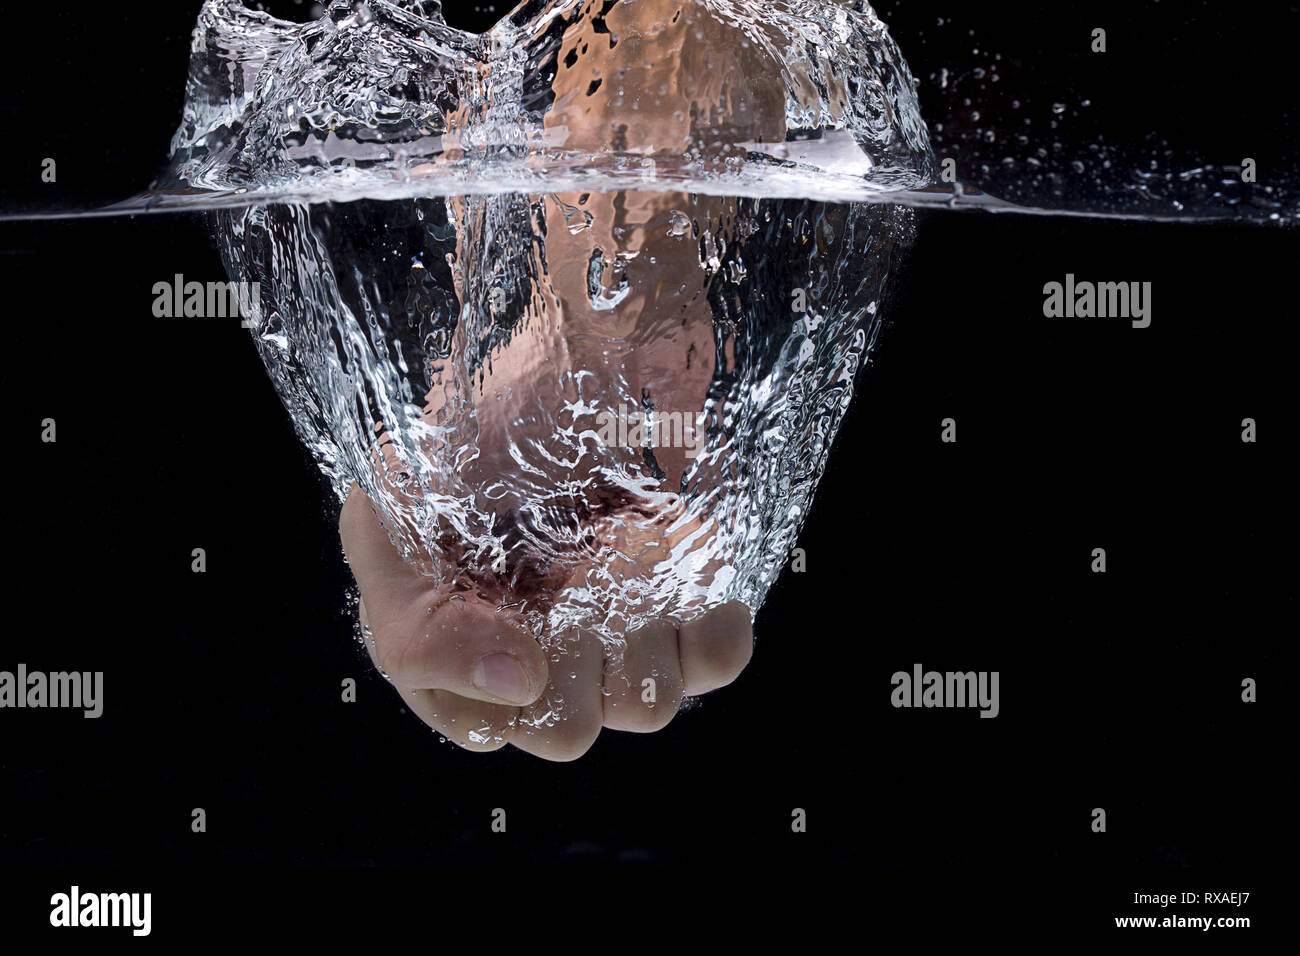 Un concept photo d'un poing poing dans l'eau, dans un studio. Banque D'Images